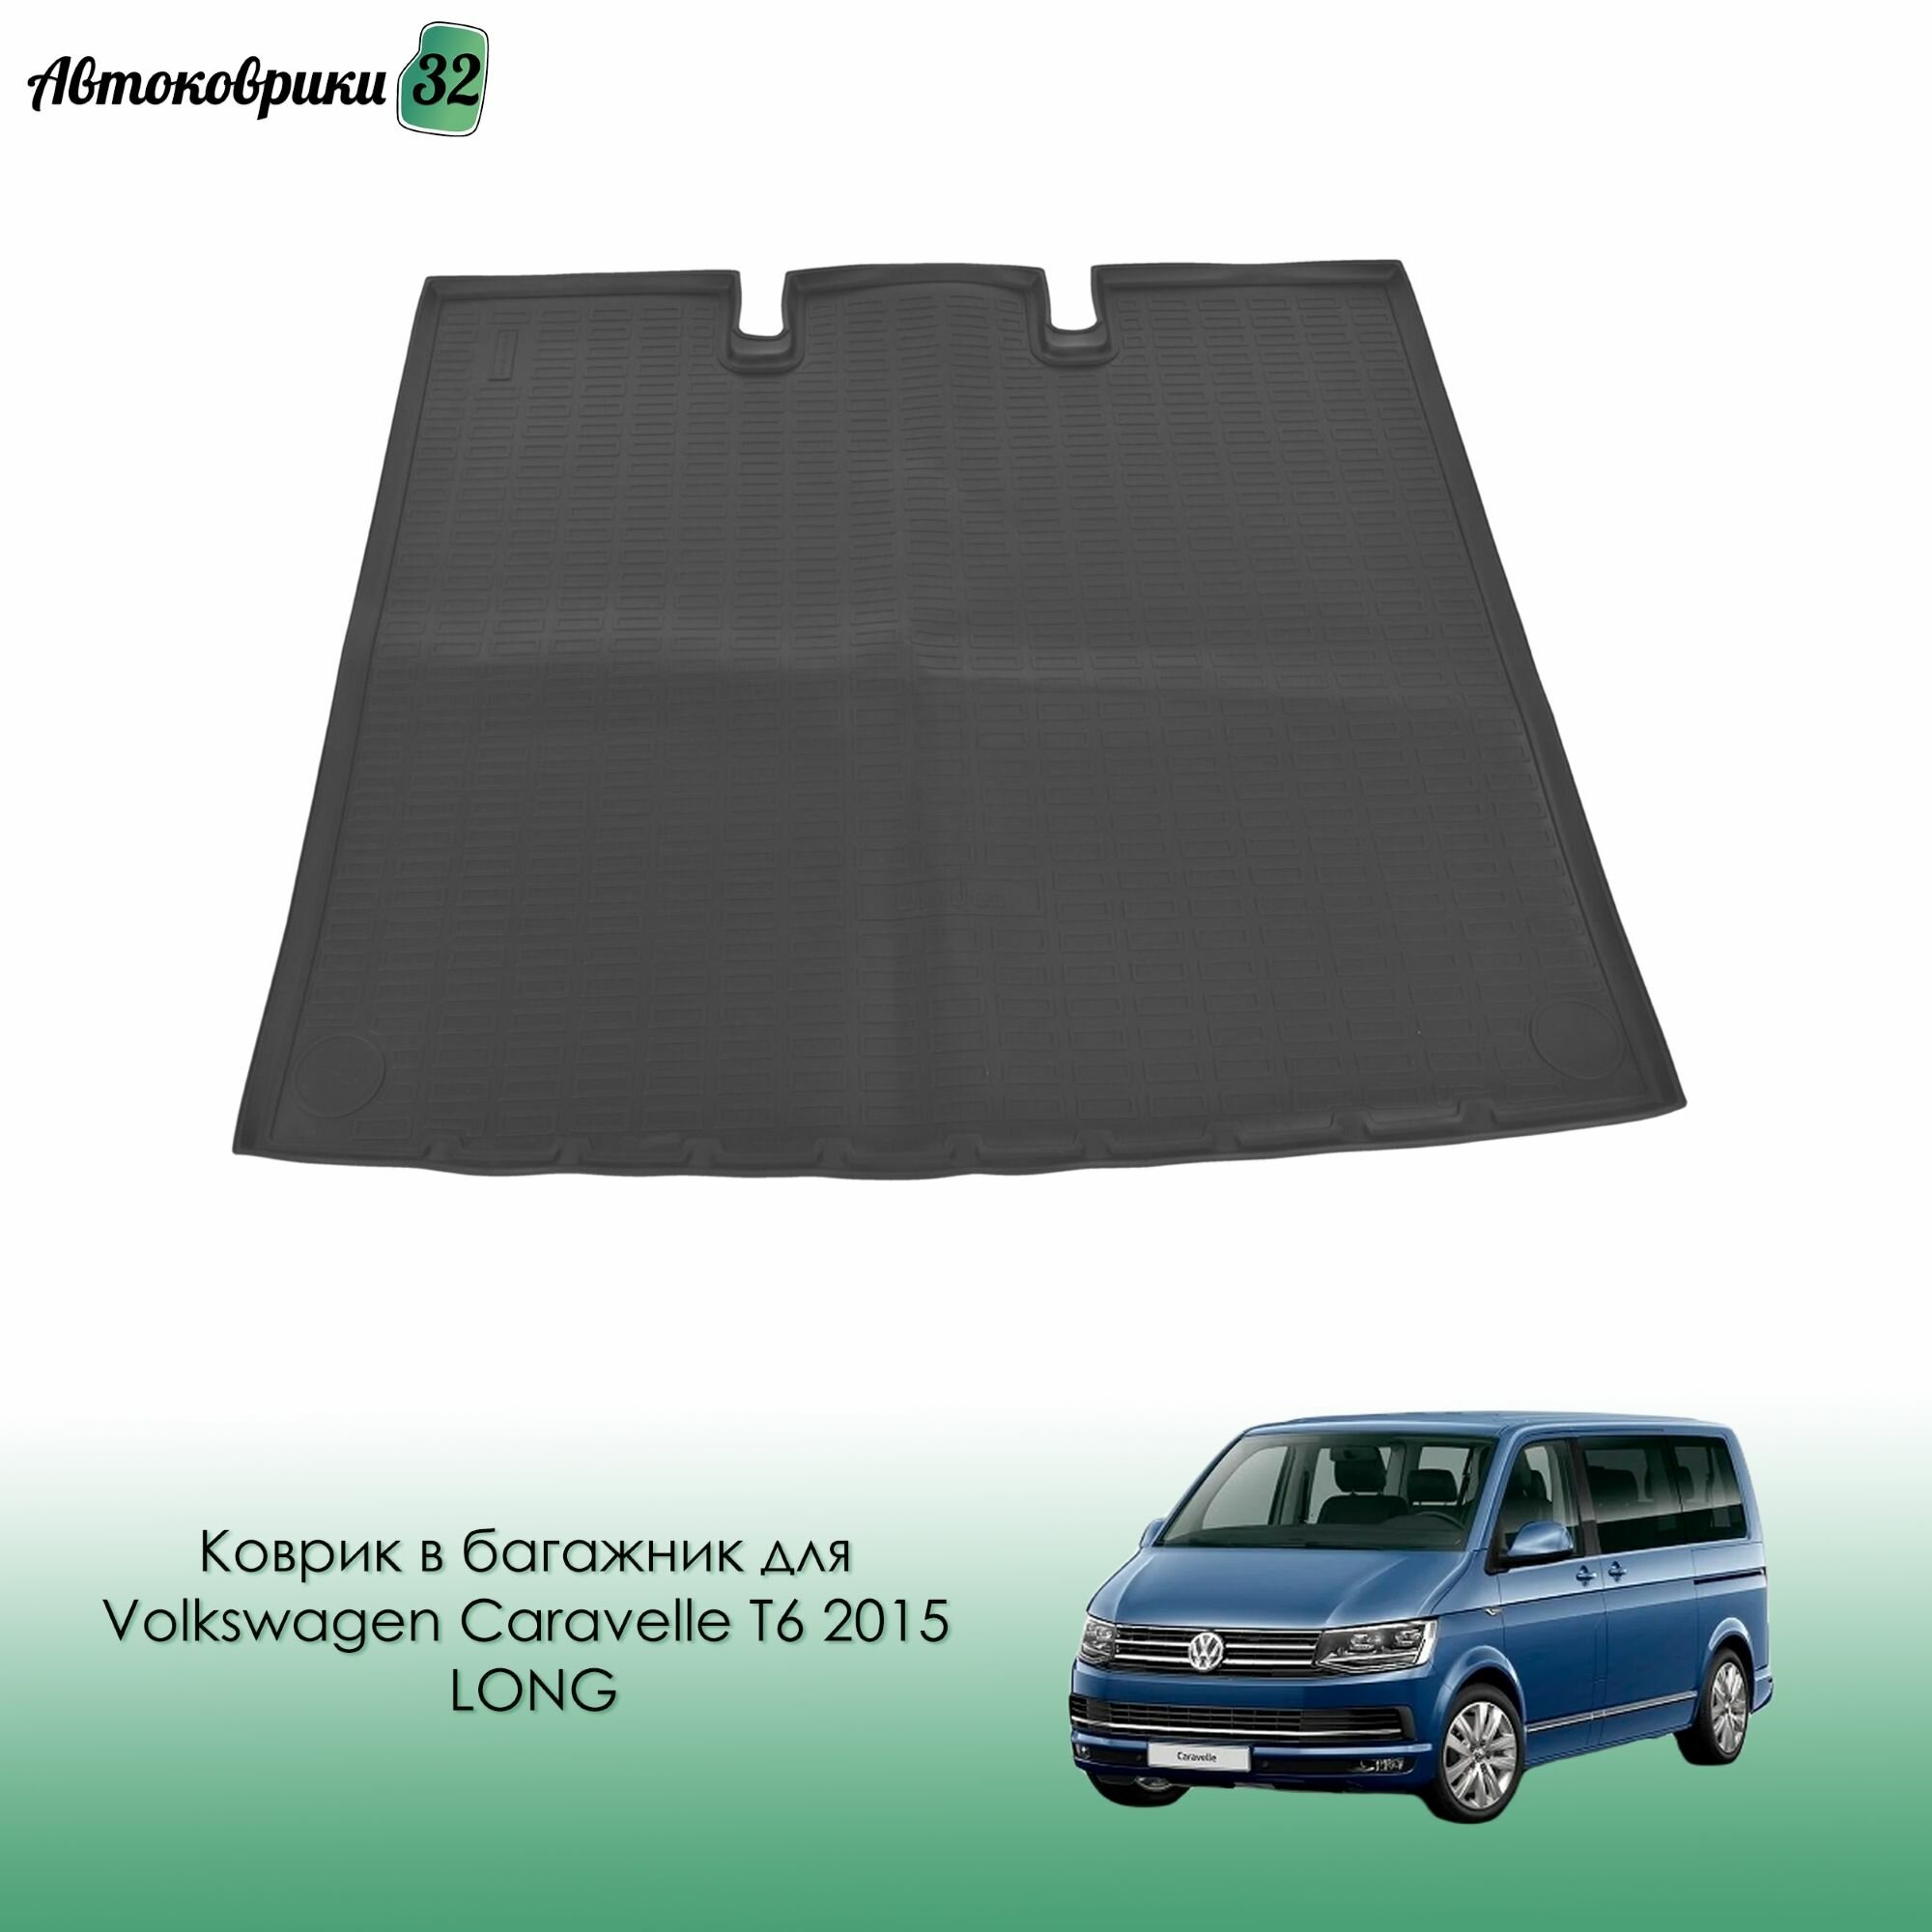 Коврик в багажник для Volkswagen Caravelle T6 2015-> LONG (длинная версия) с бортиками полиуретановый черный